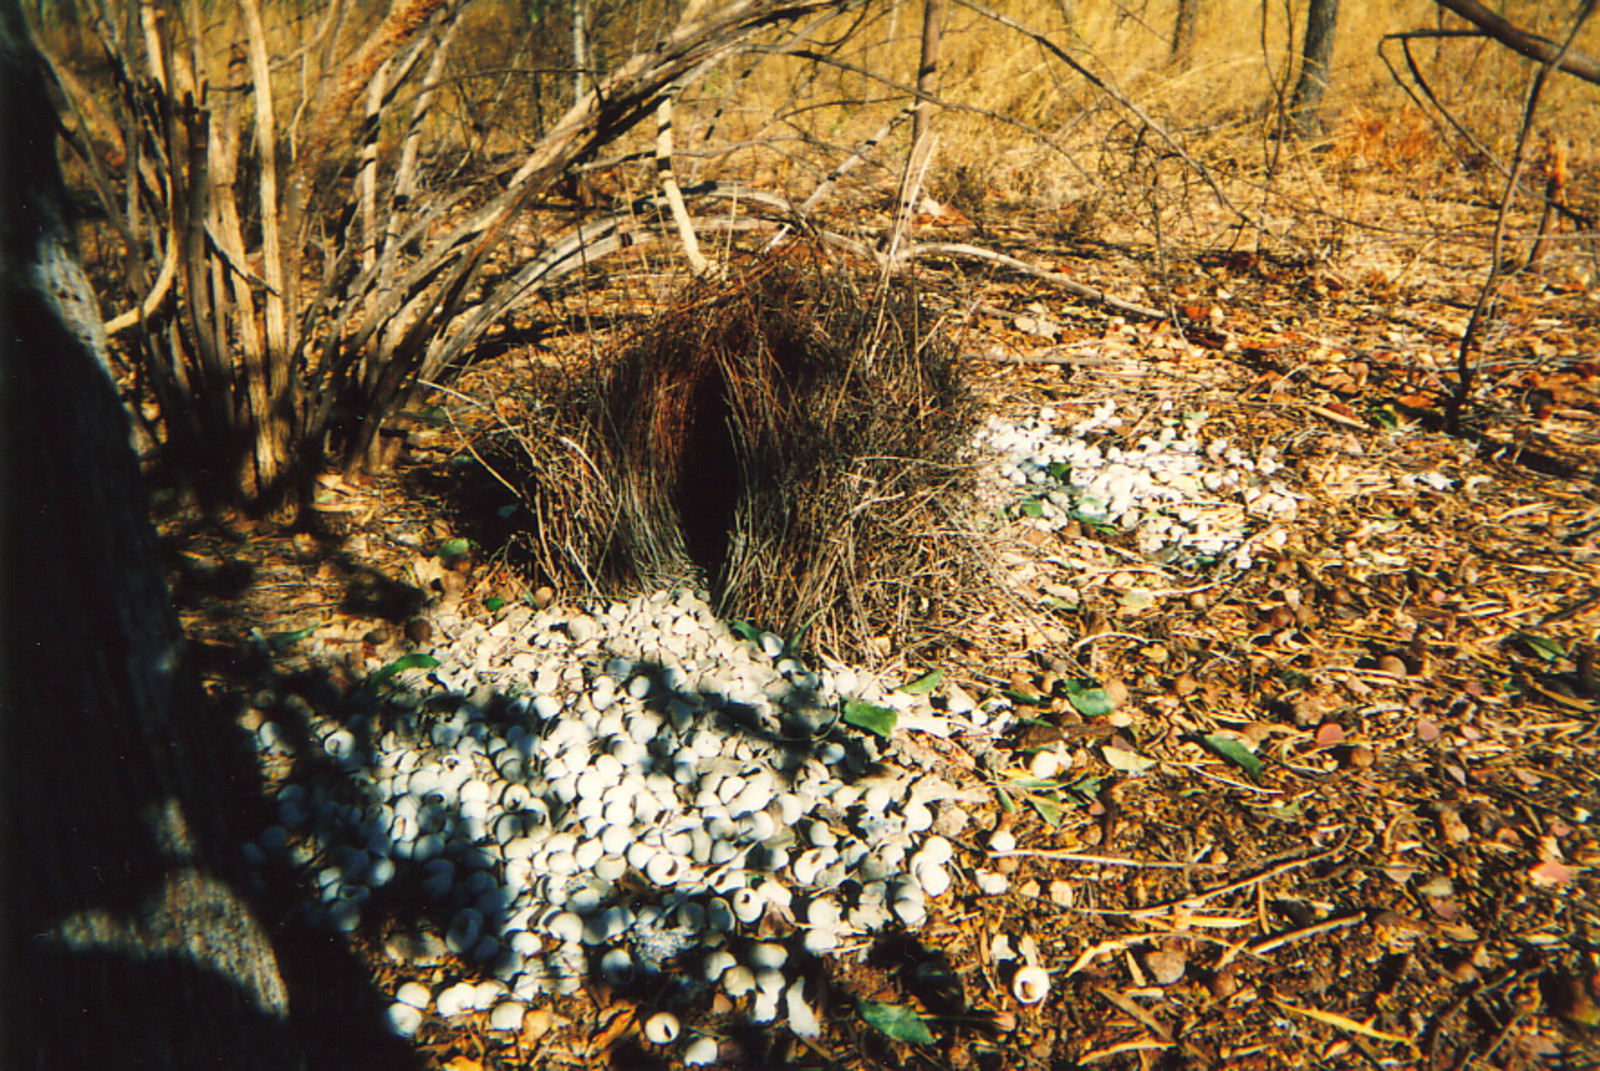 A bower bird's nest